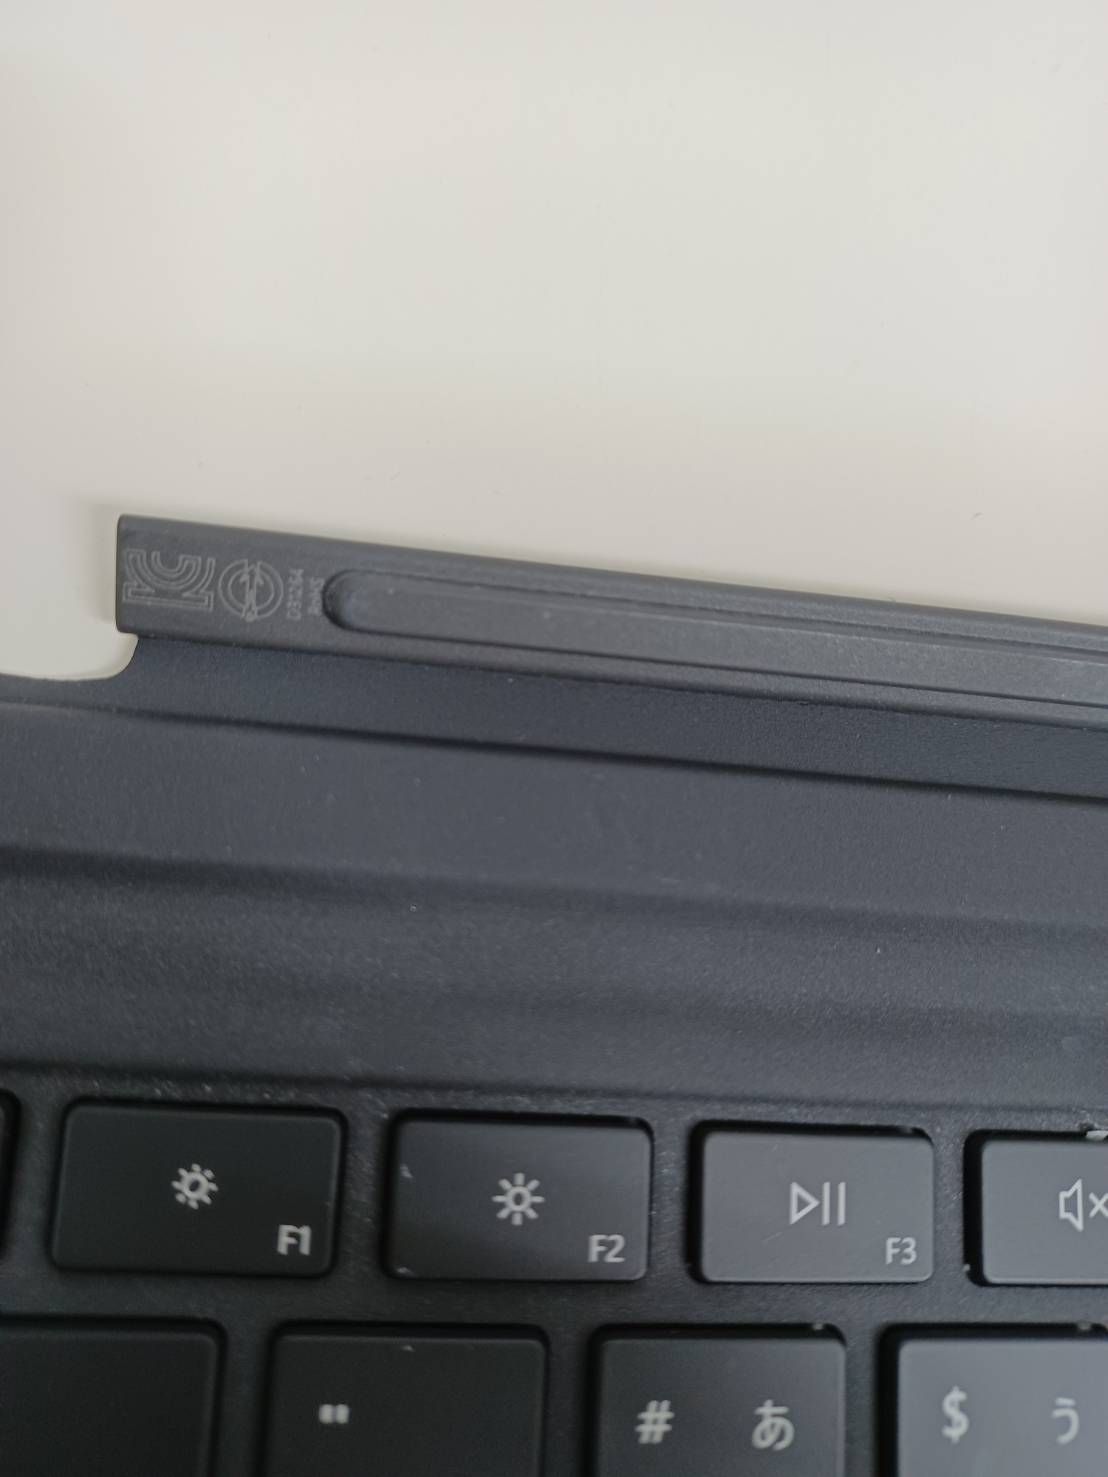 新品未使用 Surface Pro3,4,5,6,7用 キーボード 1725 - PC周辺機器